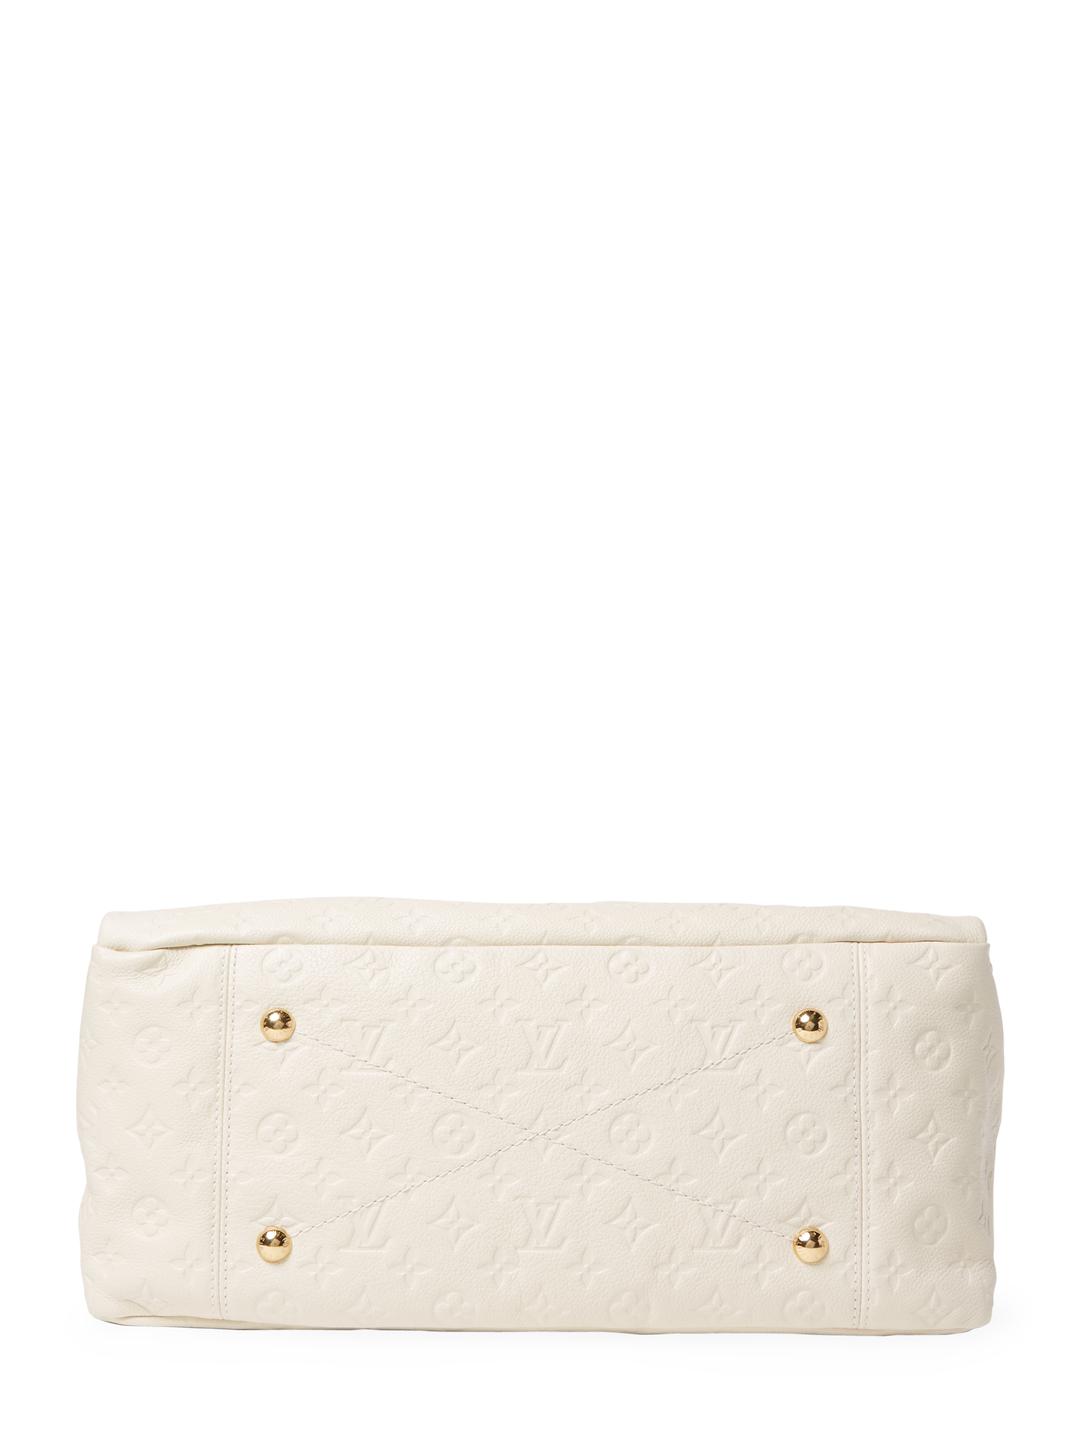 Louis Vuitton Leather Vintage White Empriente Artsy Mm Bag - Lyst